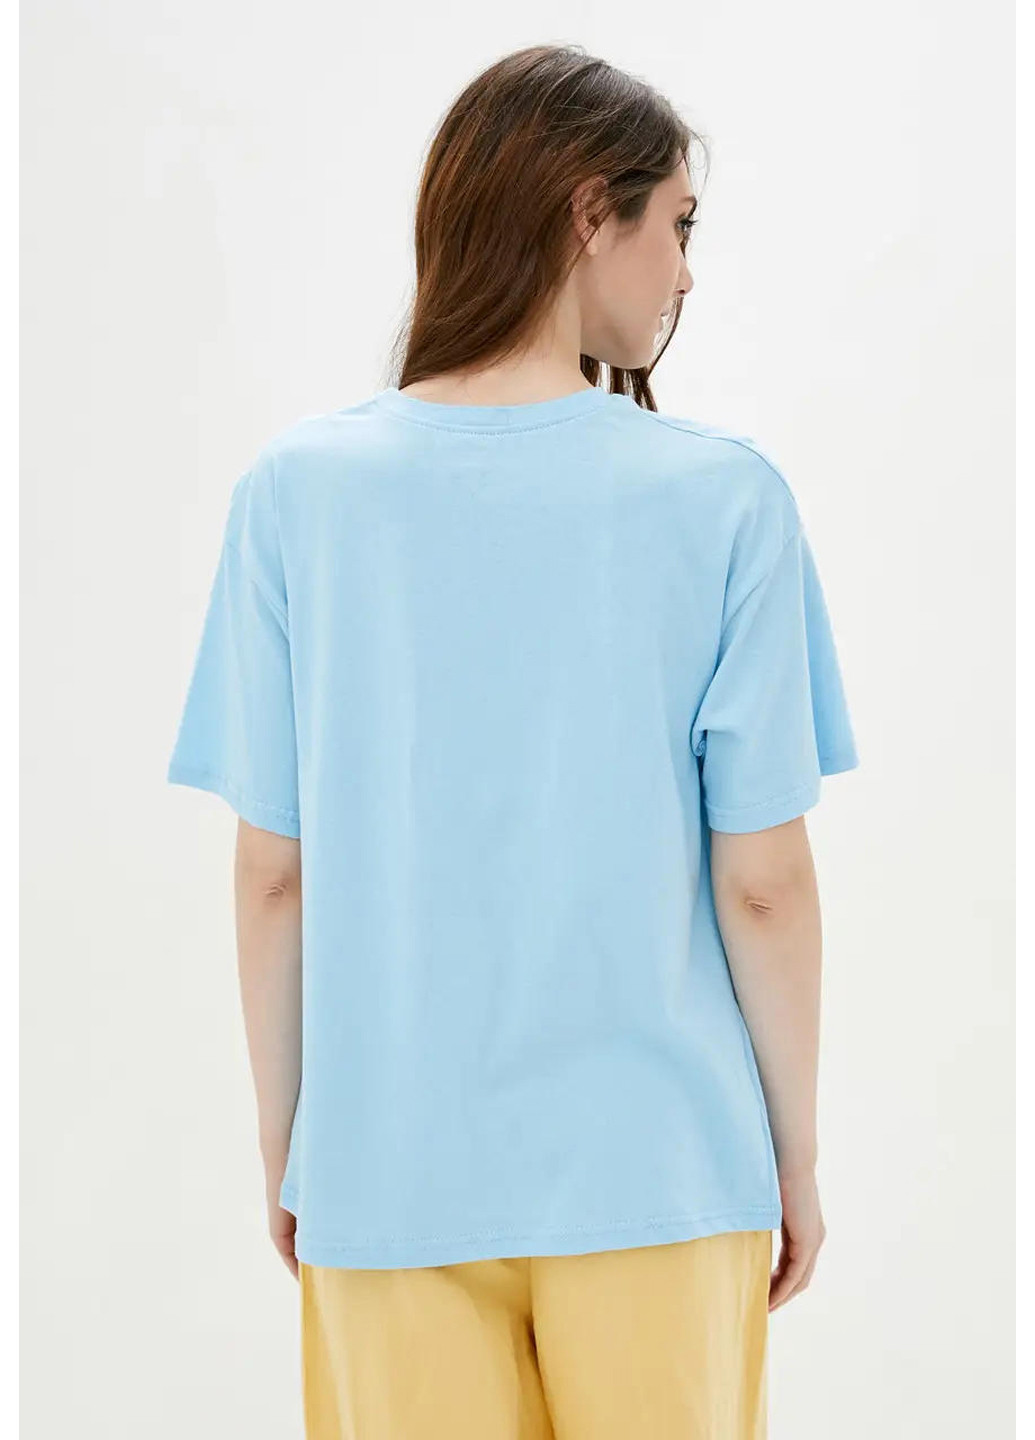 Блакитна літня жіноча футболка в стилі оверсайз. Sport Line